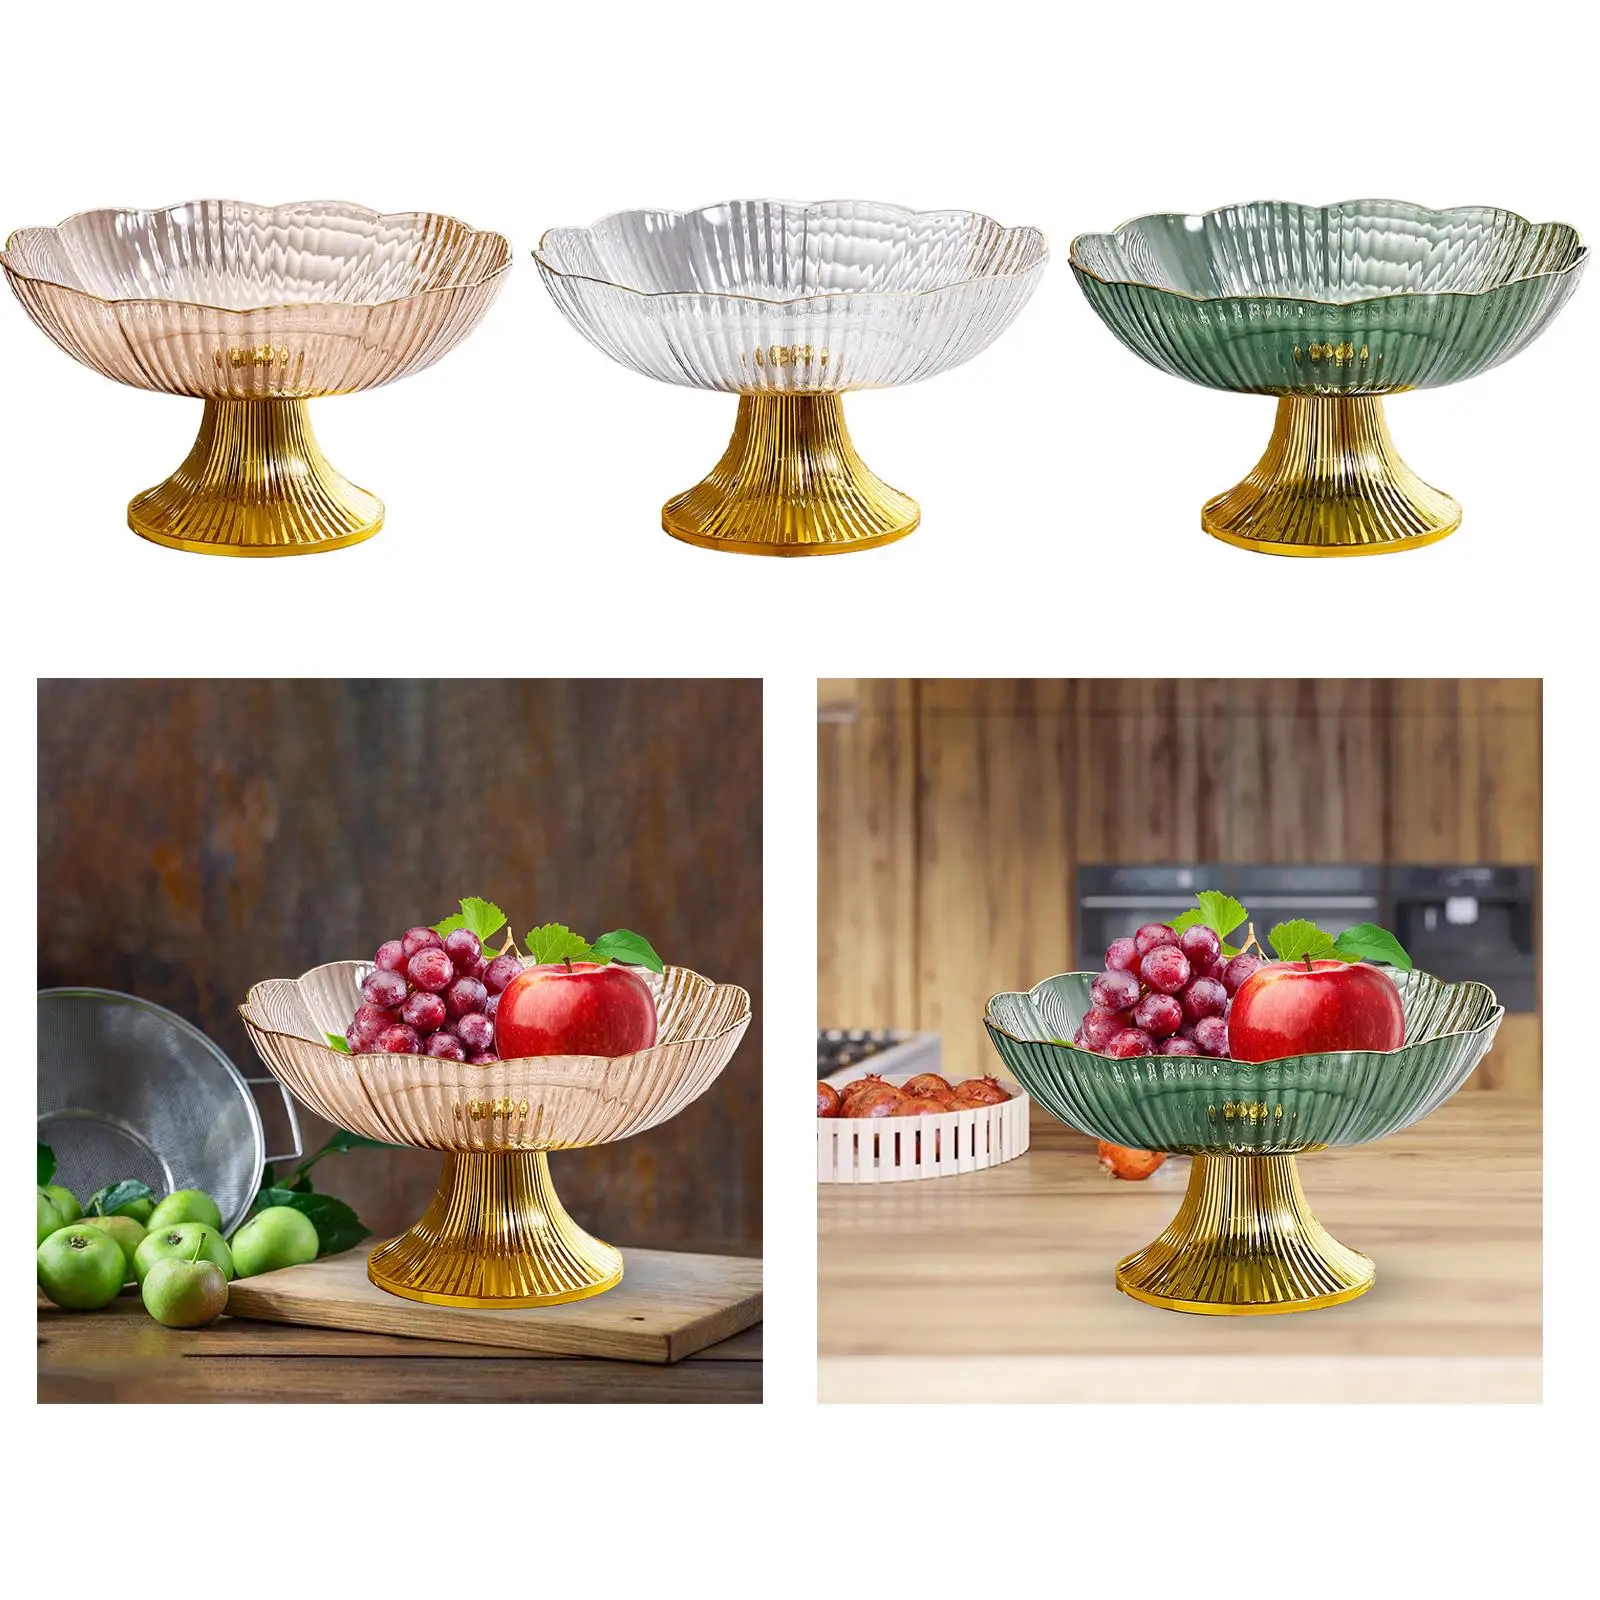 Snacks Fruit Basket Bowl Decorative Fruits Bowl Modern Fruit Holder for